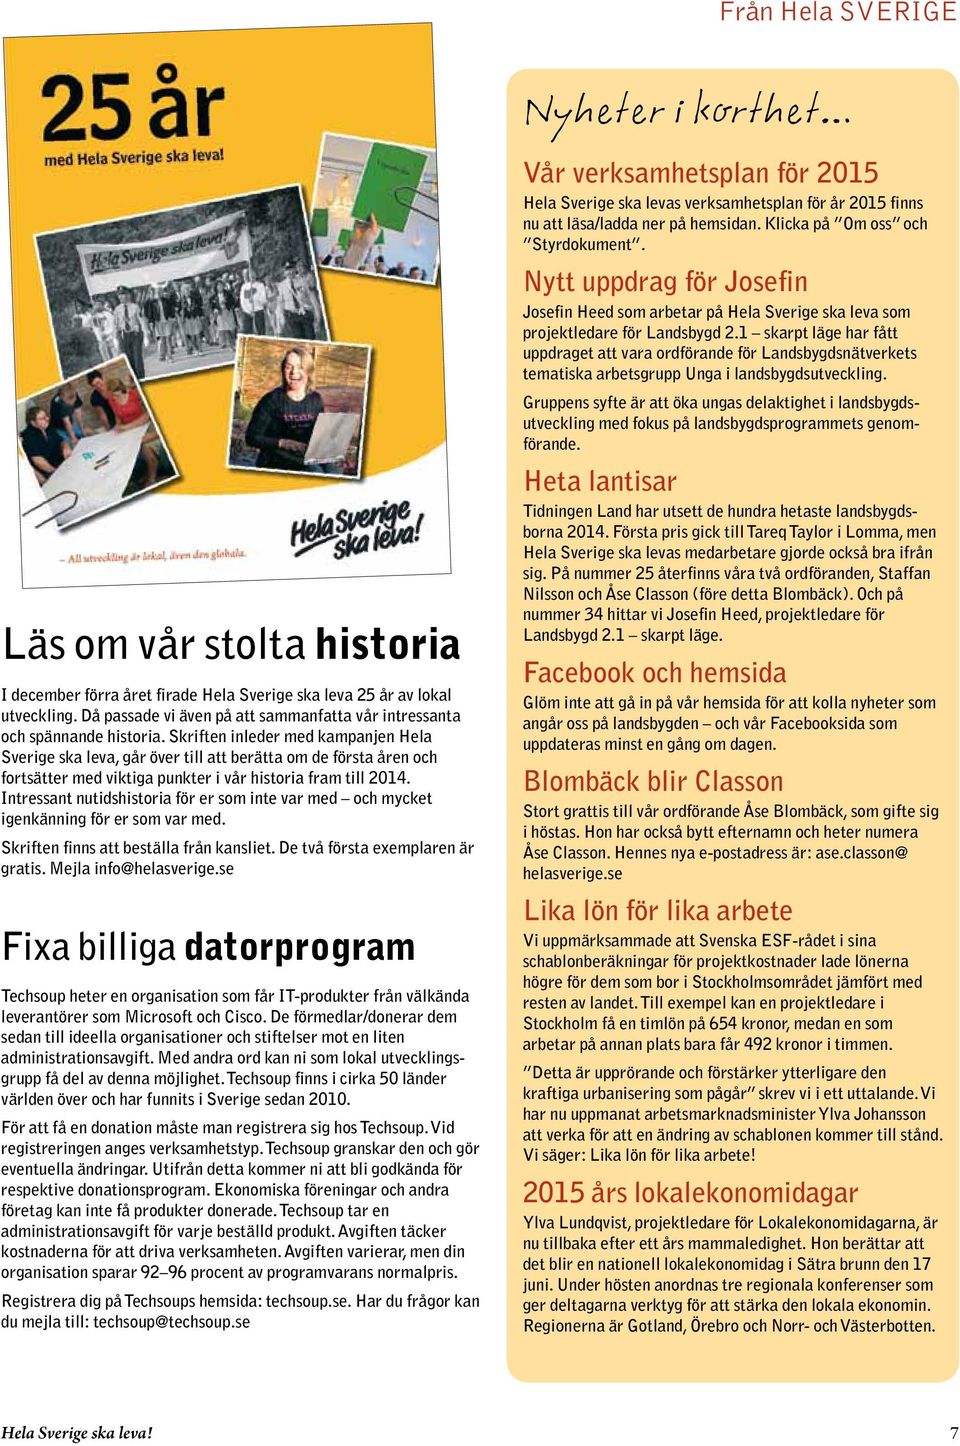 Skriften inleder med kampanjen Hela Sverige ska leva, går över till att berätta om de första åren och fortsätter med viktiga punkter i vår historia fram till 2014.